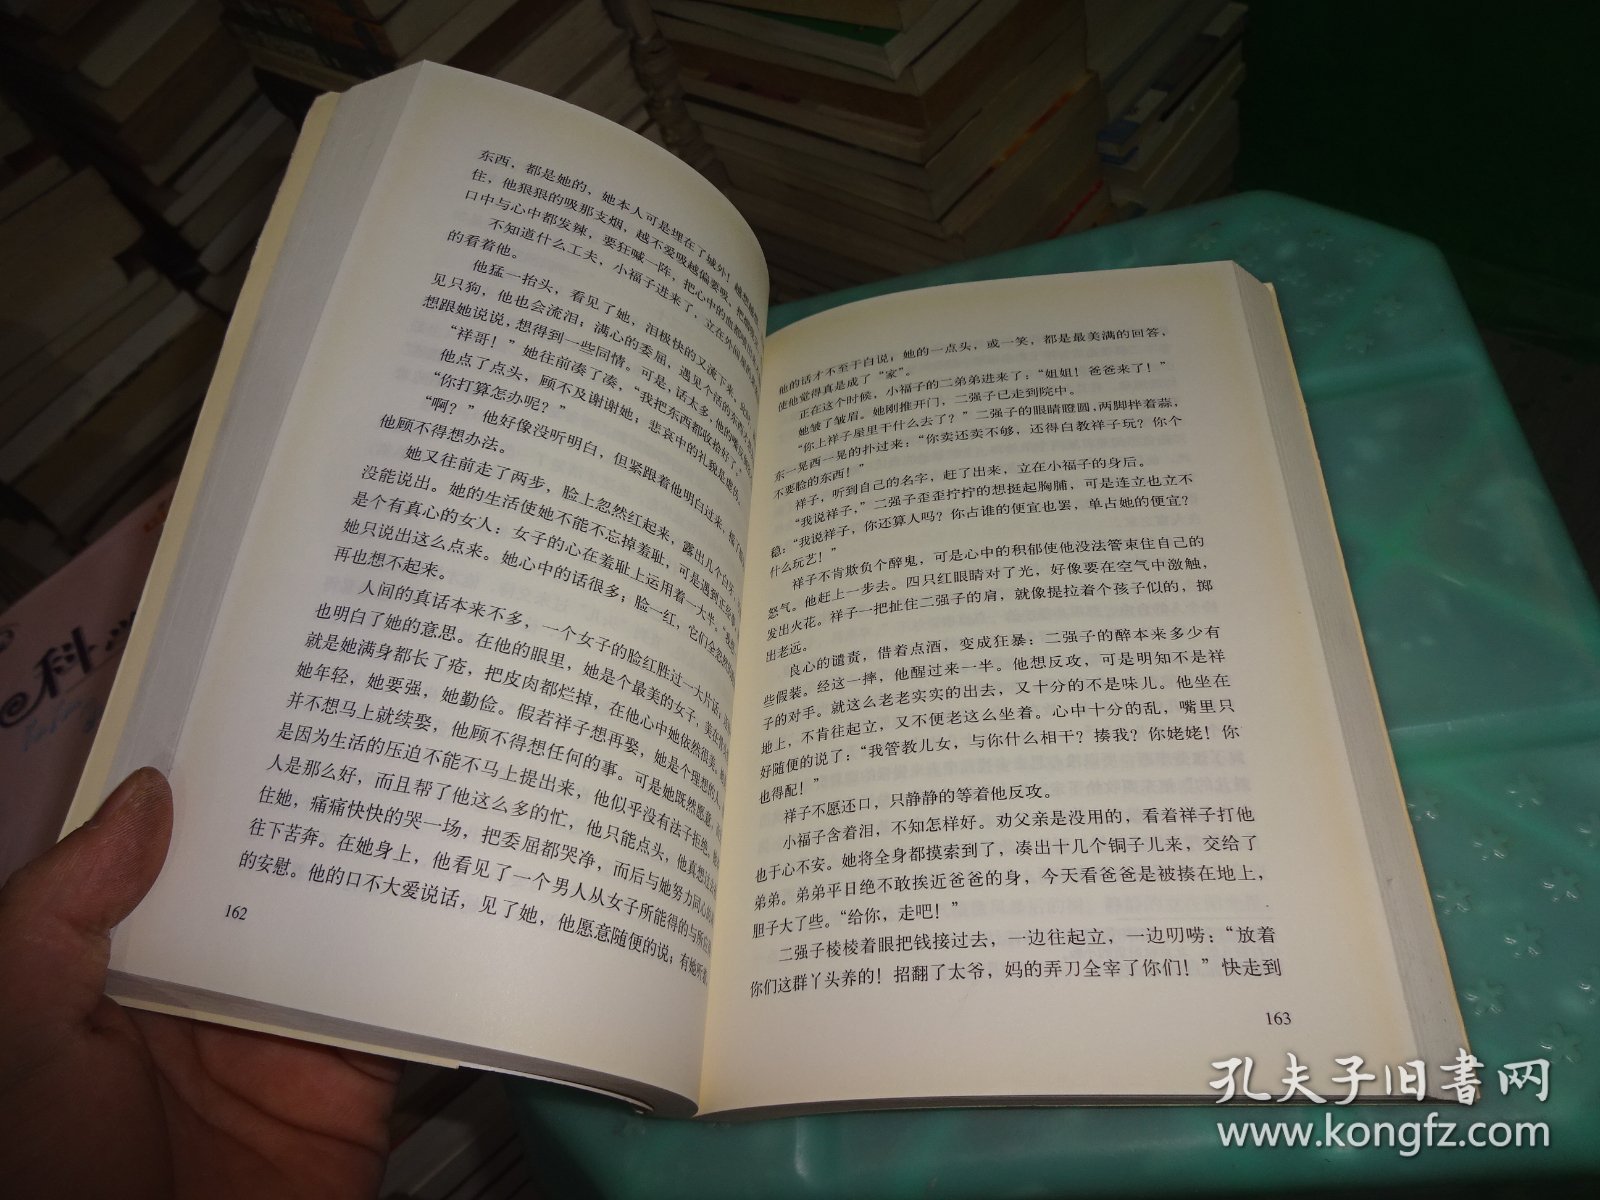 骆驼祥子 南海出版社  实物图 货号81-8